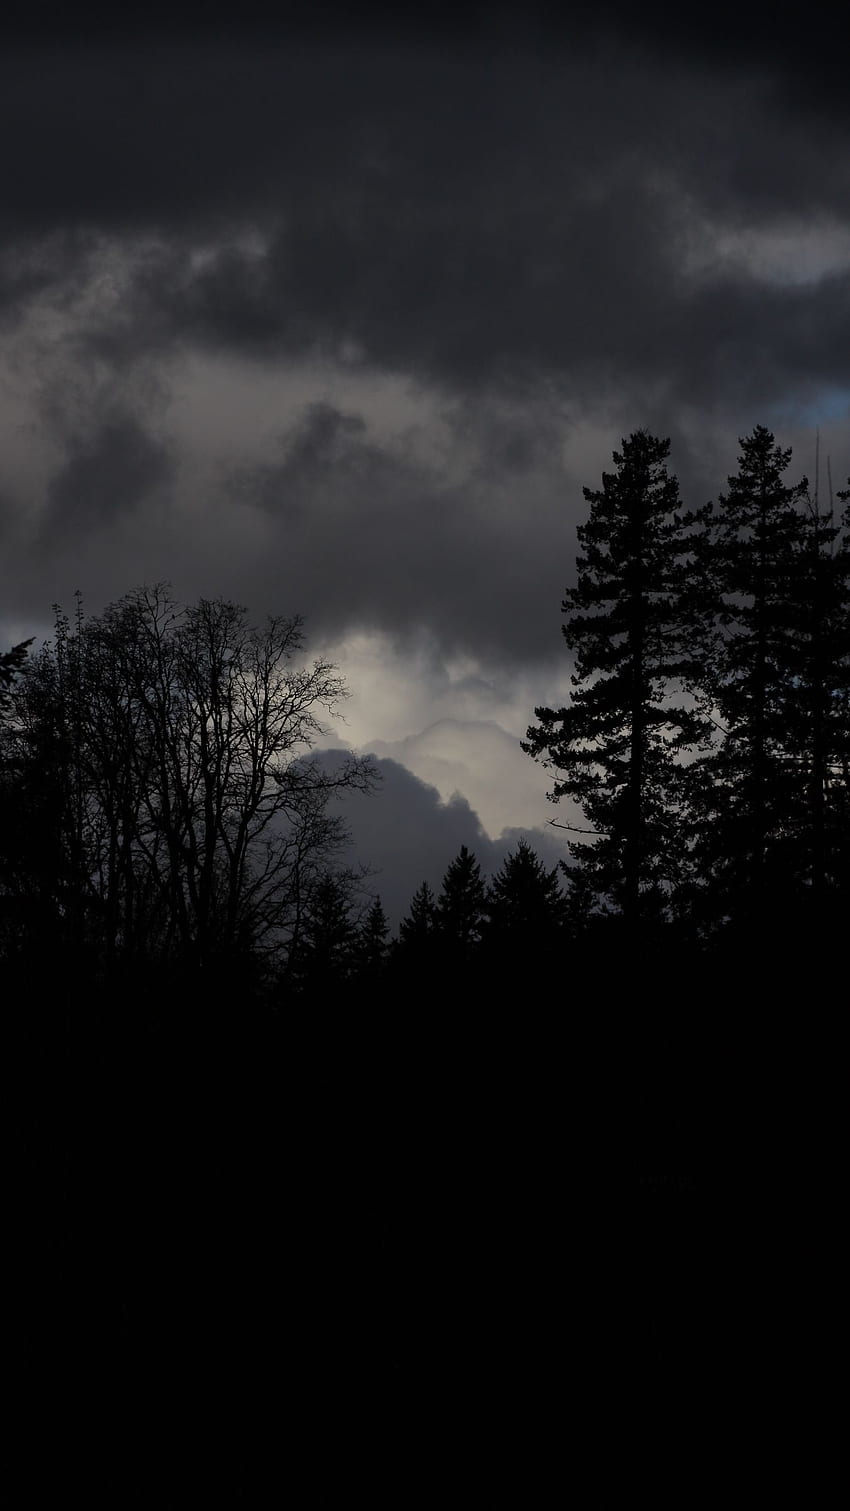 Hình nền rừng tối: Tìm kiếm một bức hình nền rừng tối để đem lại không gian trầm lắng và gợi nhớ về thiên nhiên cho chiếc điện thoại của bạn. Với nhiều lựa chọn về hình nền rừng tối đẹp mắt nhất, bạn sẽ tìm được bức hình nền ưng ý nhất cho màn hình chiếc điện thoại của mình.